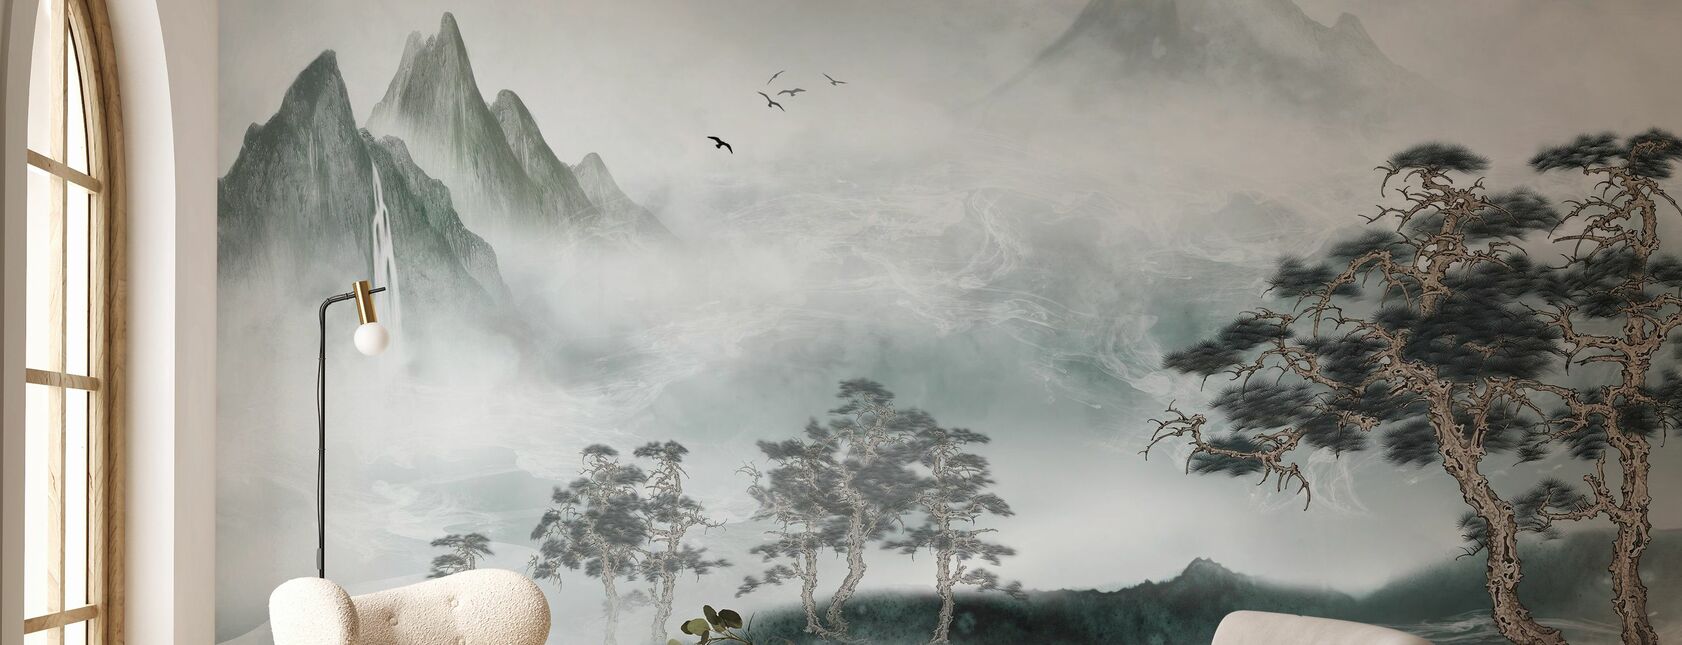 Misty Landscape - Wallpaper - Living Room